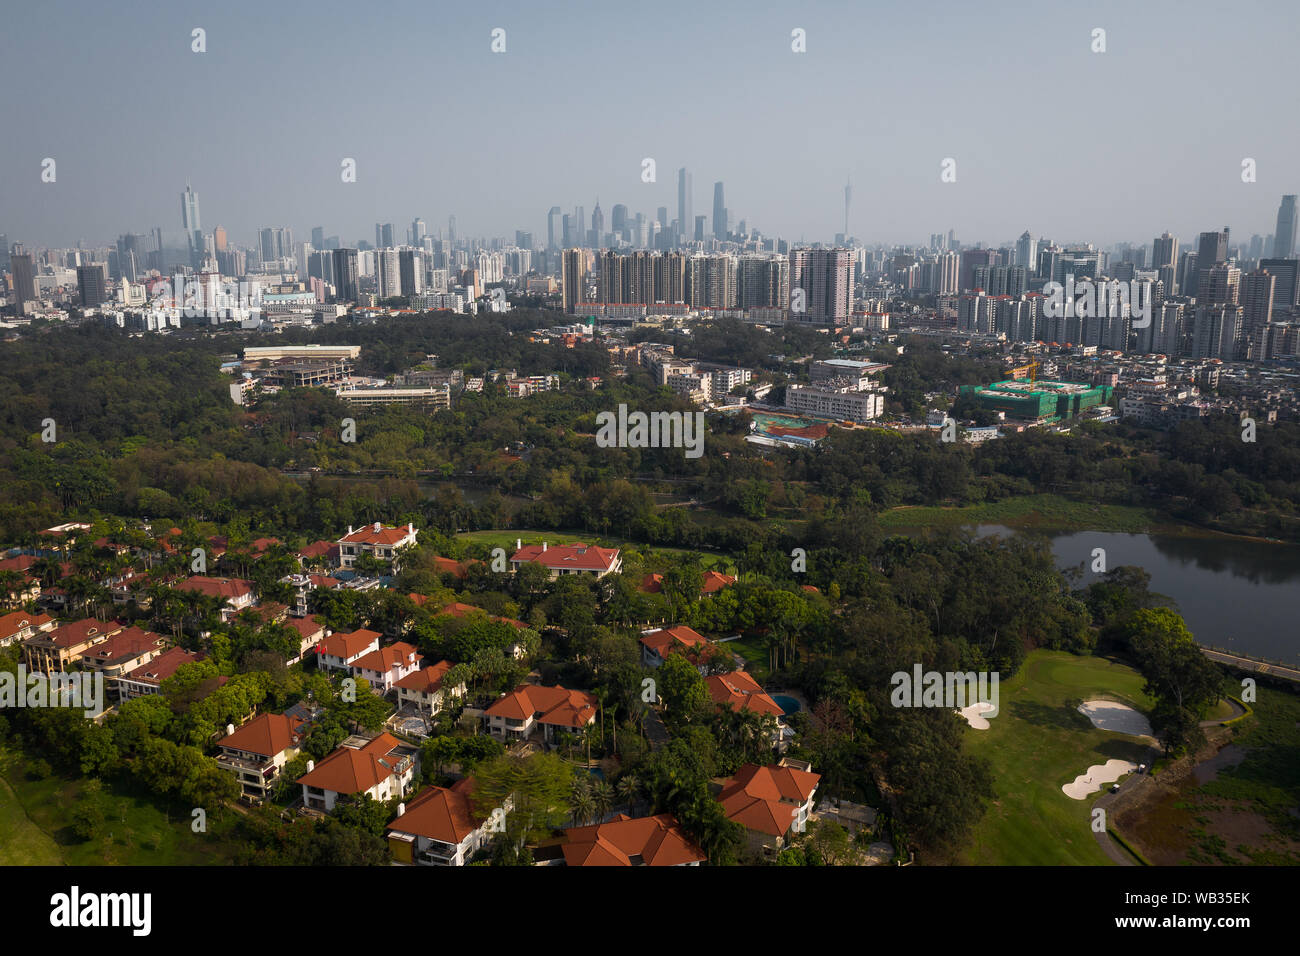 cityscape of the guangzhou china Stock Photo